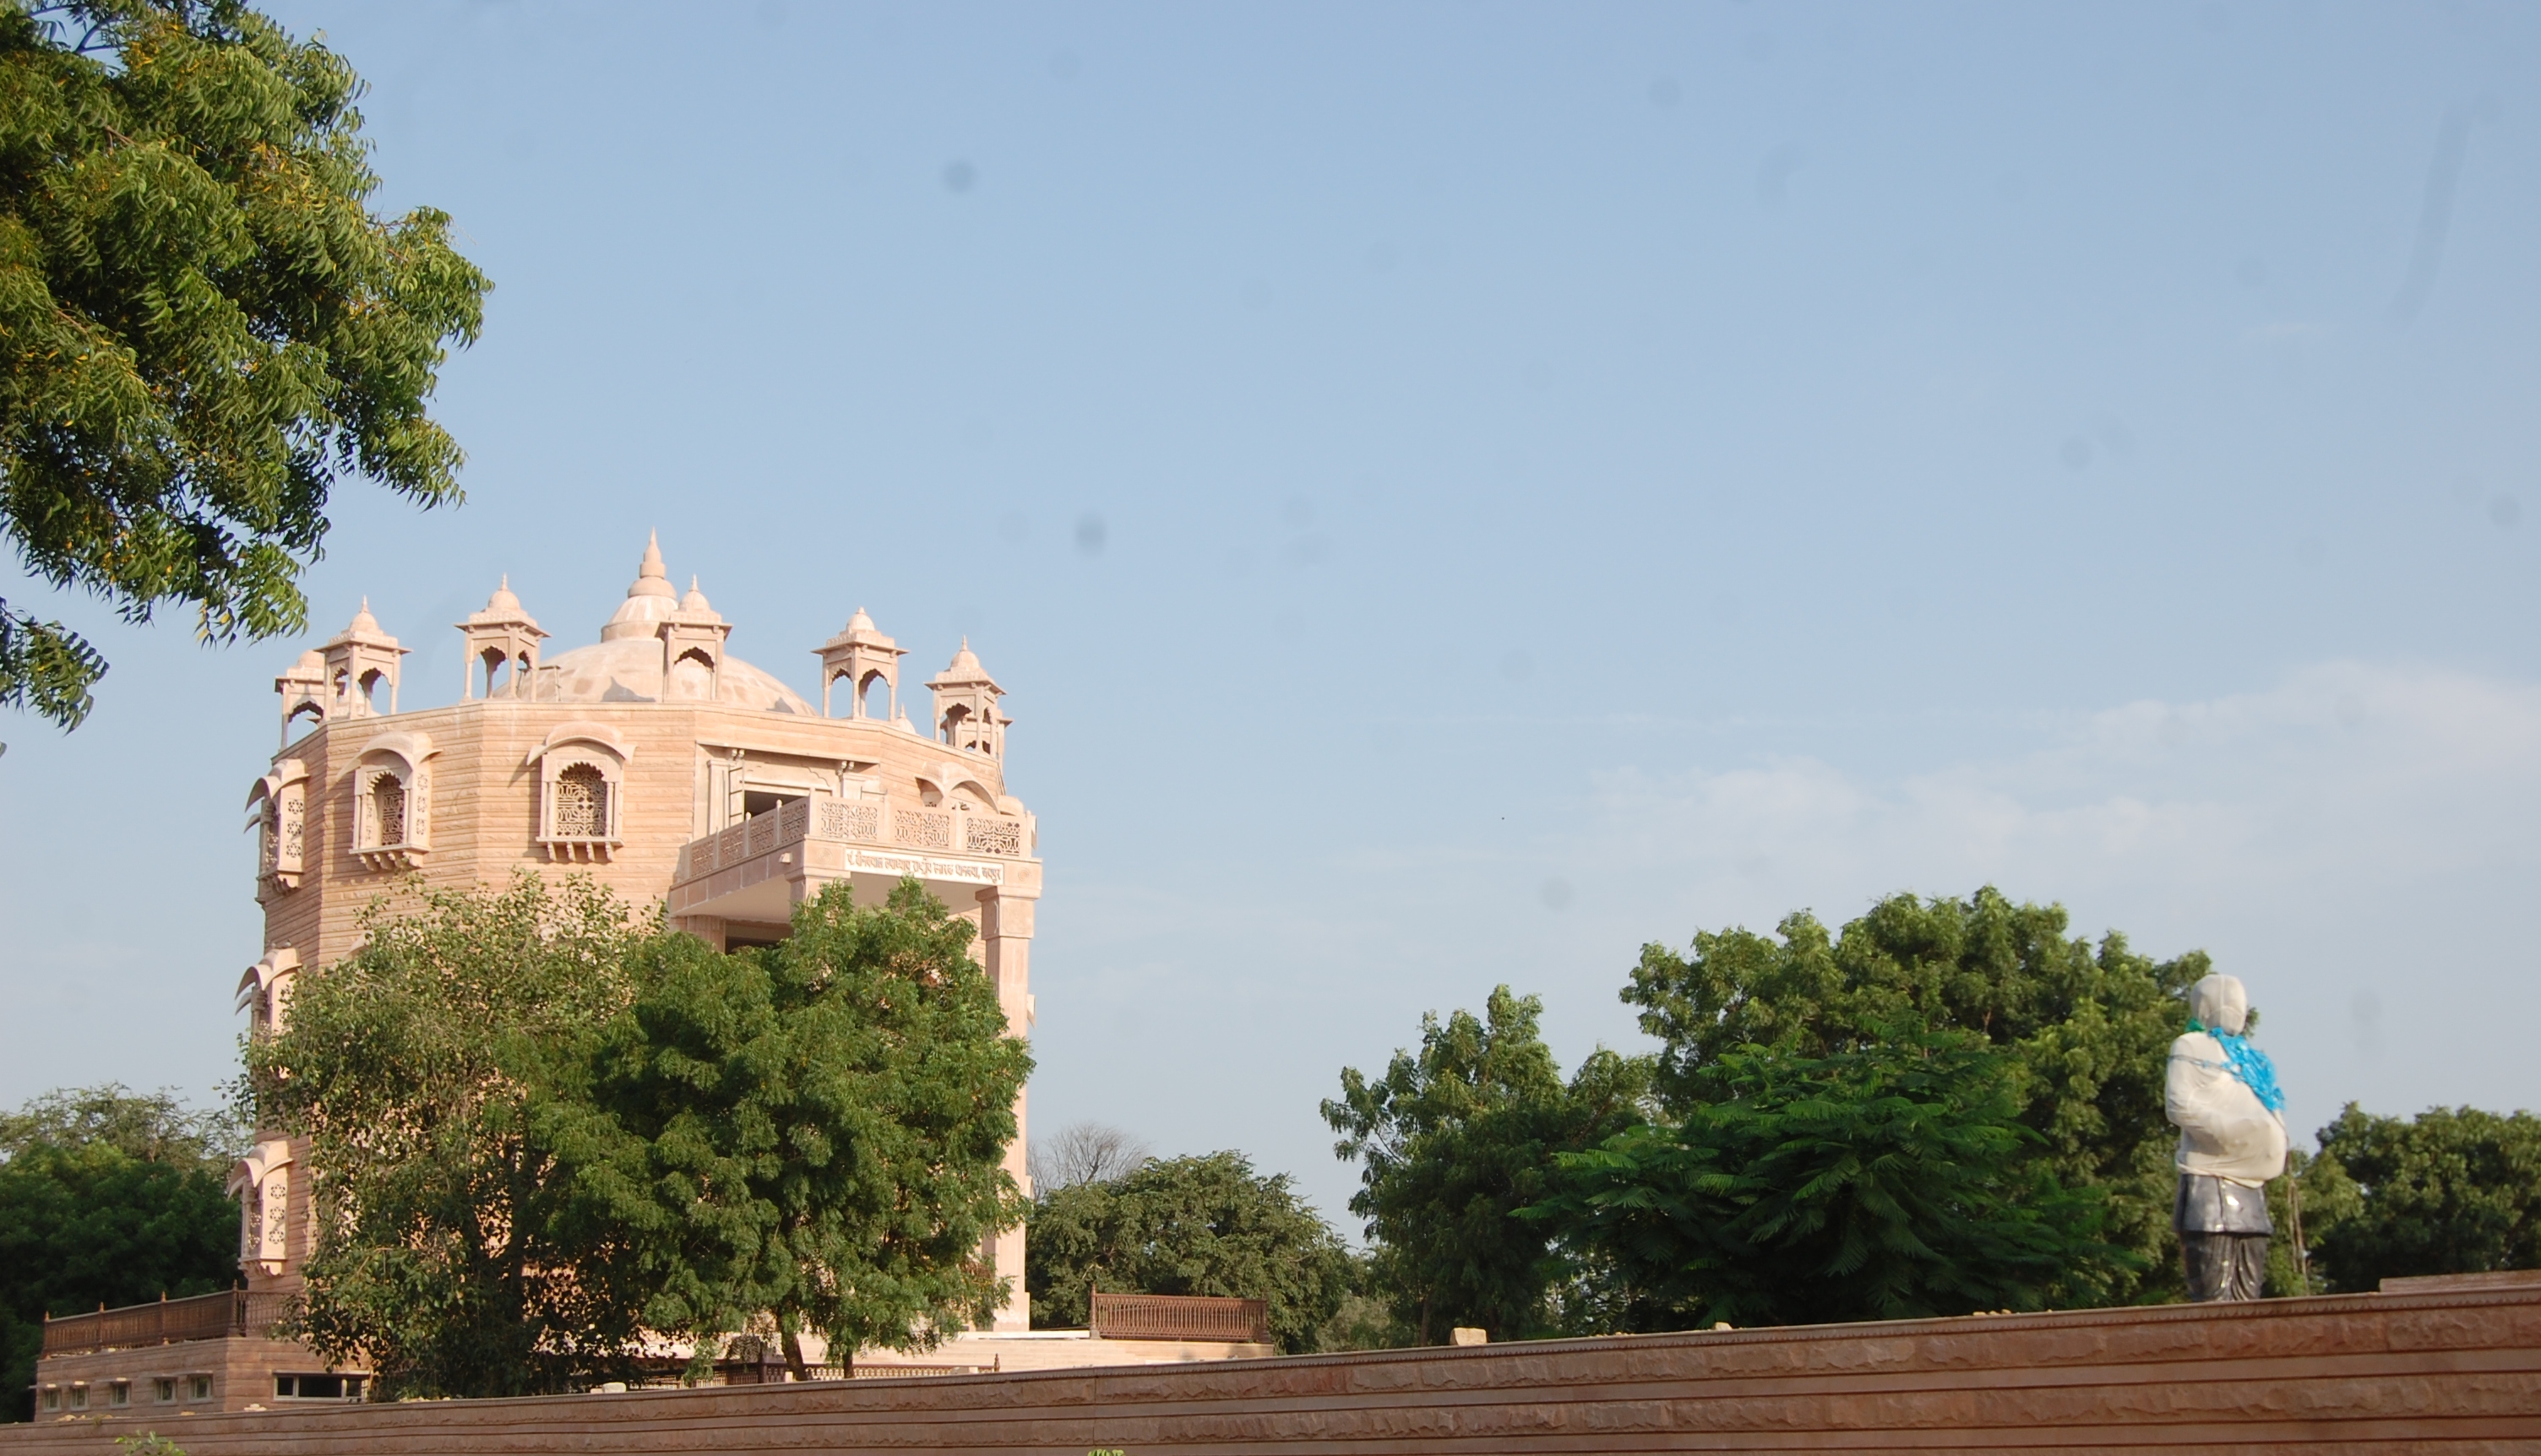 धानक्या रेल्वे स्टेशन के पास पं दीनदयाल उपाध्याय निर्माणाधीन राष्ट्रीय स्मारक